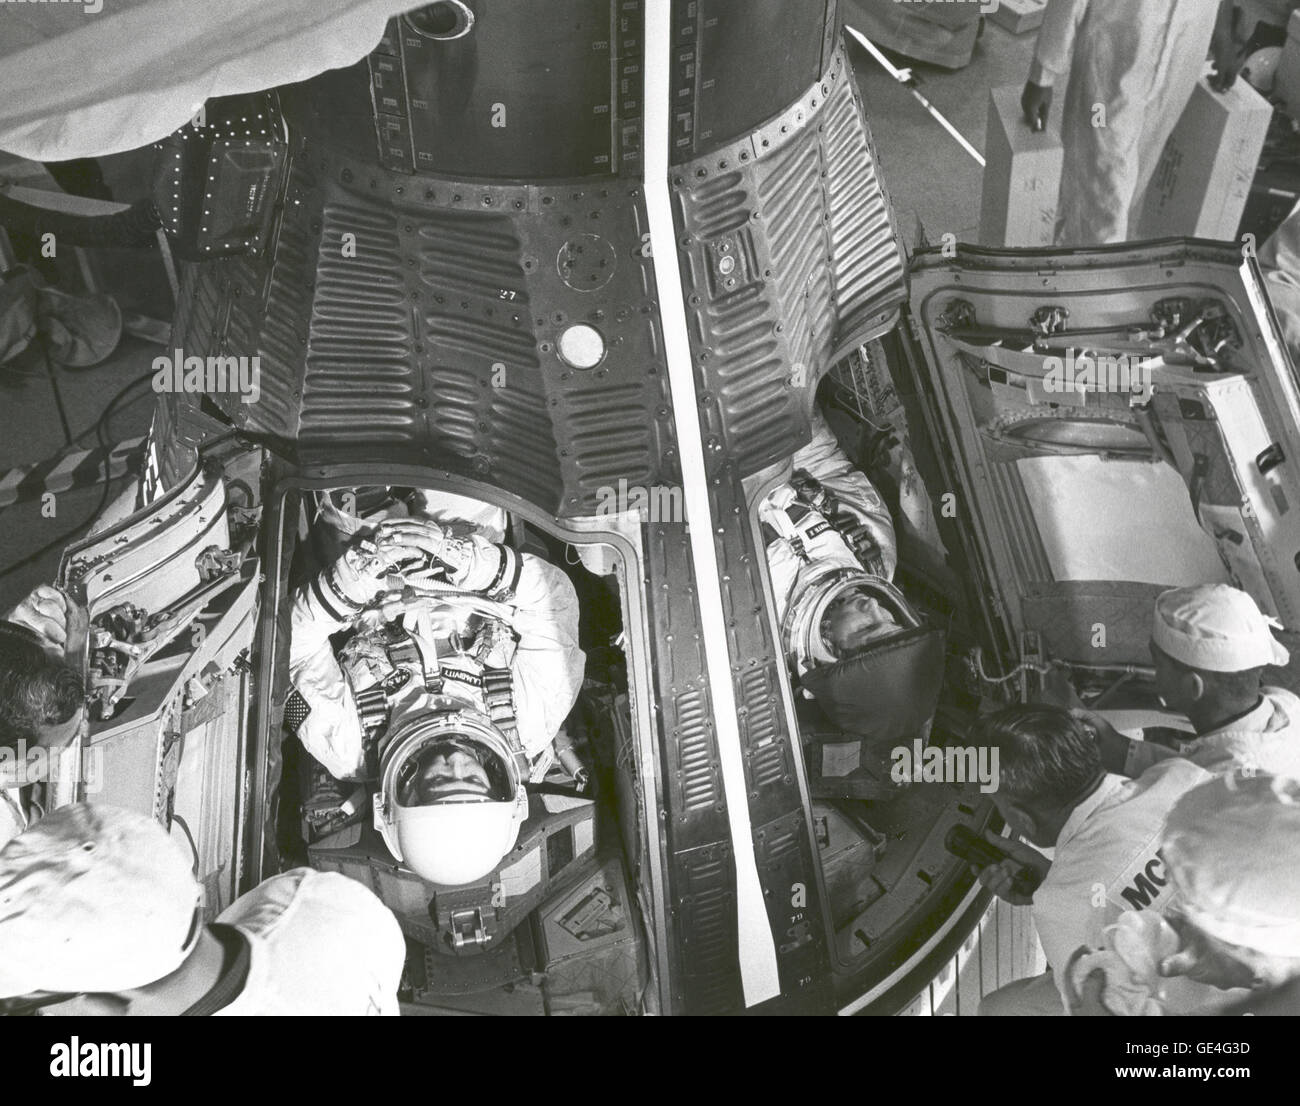 Astronauten James A. McDivitt, Befehl Pilot (links) und Edward H. White II, pilot, werden wenige Minuten nach dem Einlegen in Gemini IV-Raumsonde der NASA ca. 7:15 Uhr EST am Morgen des 3. Juni 1965, um komplexe 19 starten angezeigt. Nach 1 Stunde und 16 Minuten Verzögerung, wegen Schwierigkeiten bei der Senkung der Trägerrakete Aufrichter startete das Raumschiff um 10:16 Uhr EST. Eine Abdeckung über White gold Visier verhindert, dass mögliche kratzen bevor Luke schließen. Das gold Visier geschützt weiß von den Strahlen der Sonne während seiner EVA, die erste jemals von den amerikanischen Astronauten durchgeführt.  Bild-Nr.: 65-H-910 Datum: Stockfoto